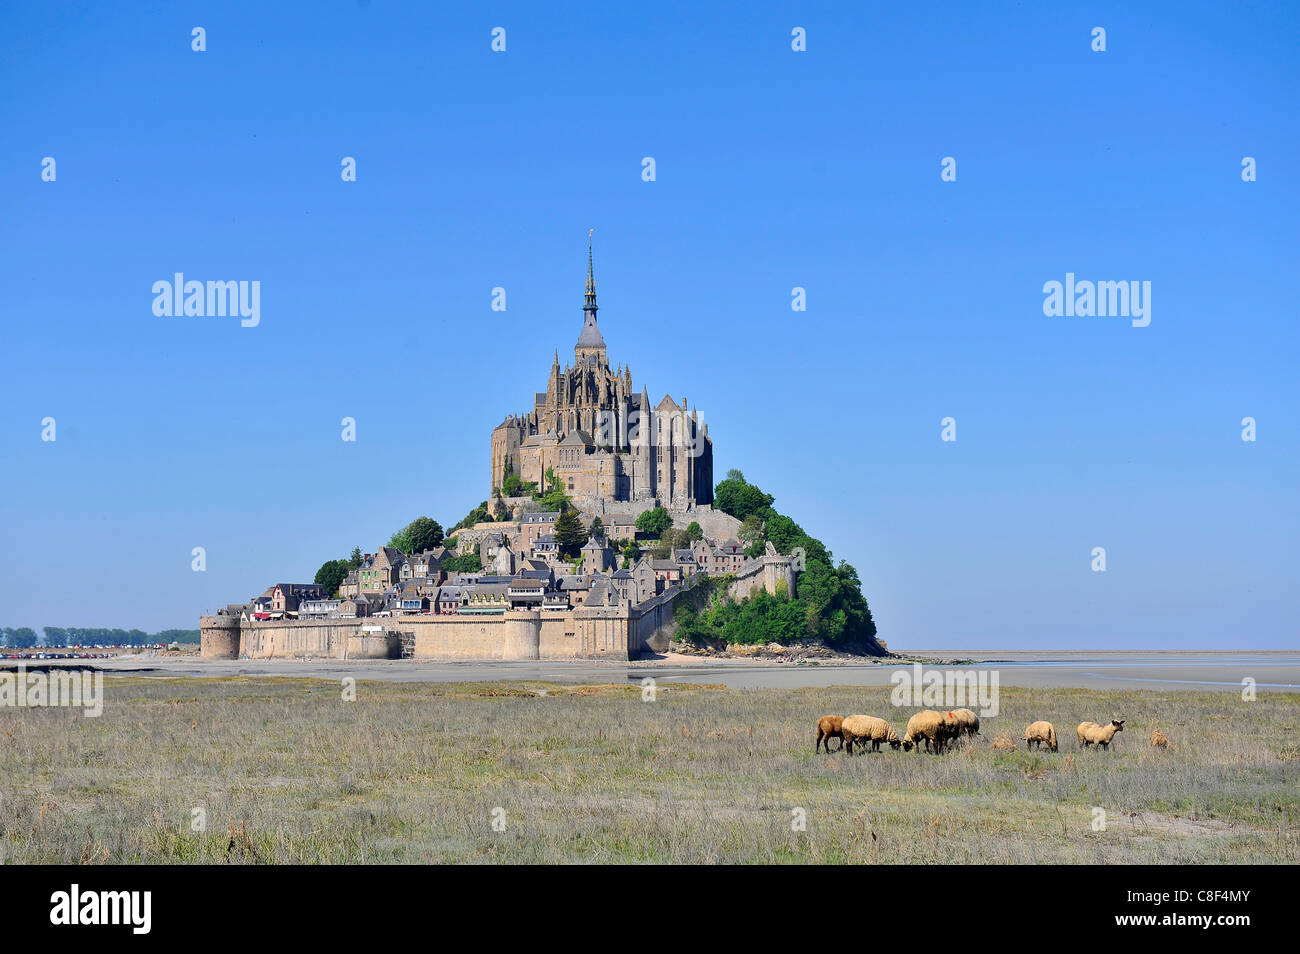 Abtei von Mont-Saint-Michel, UNESCO World Heritage Site, Normandie, Frankreich Stockfoto